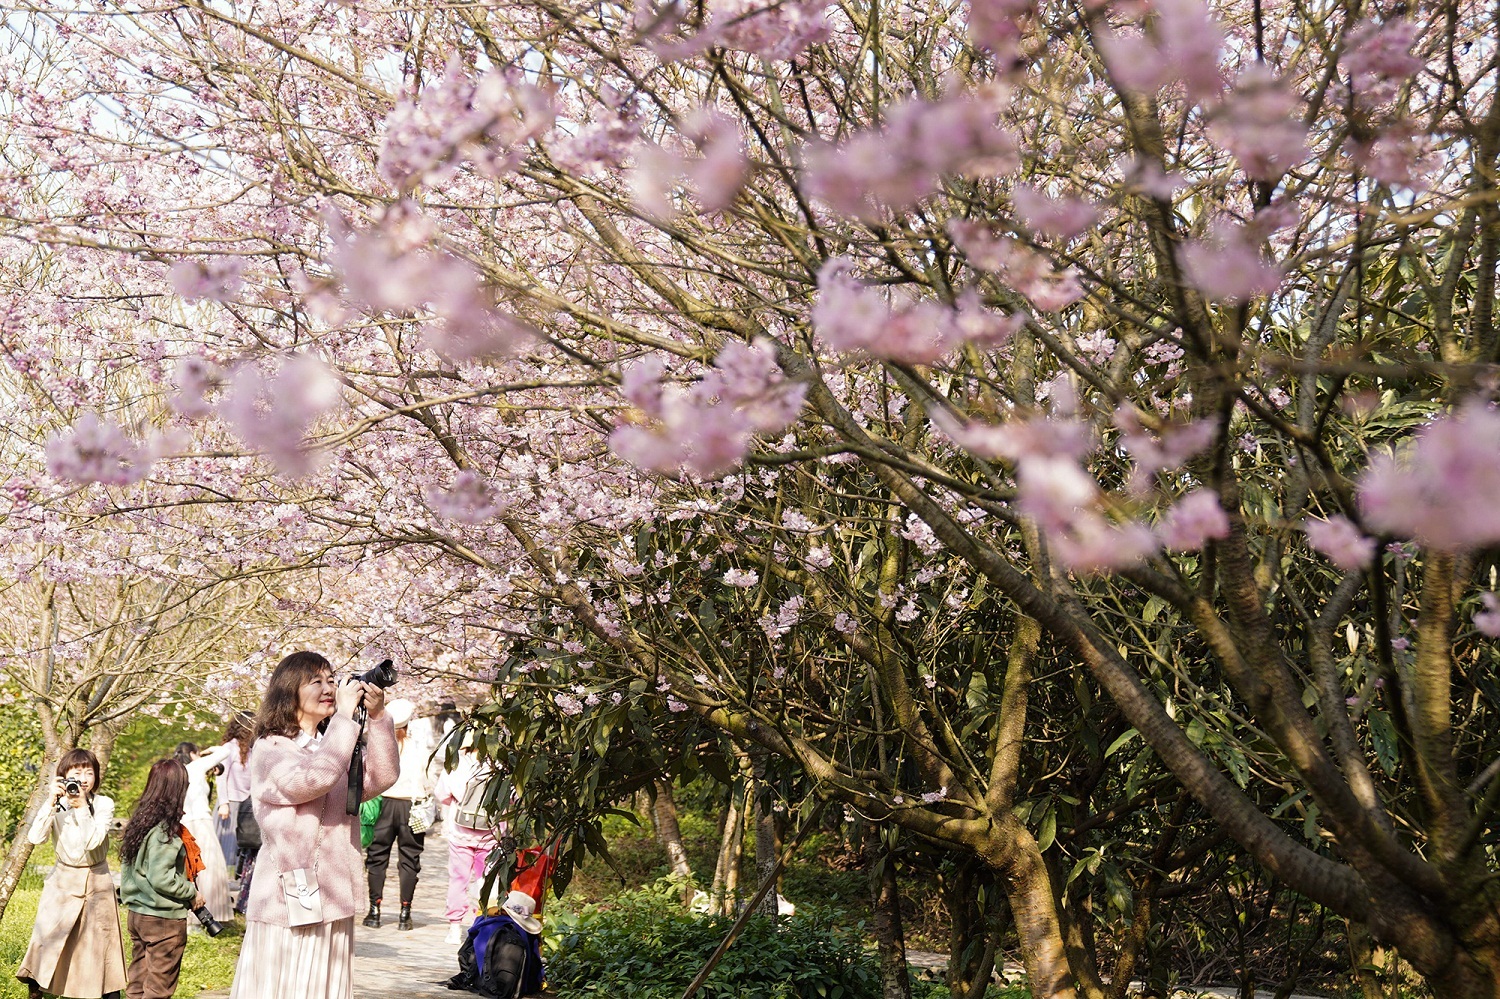 在北碚区澄江镇五一村樱花橘乡农业公园,粉色的樱花树下,游人用相机拍